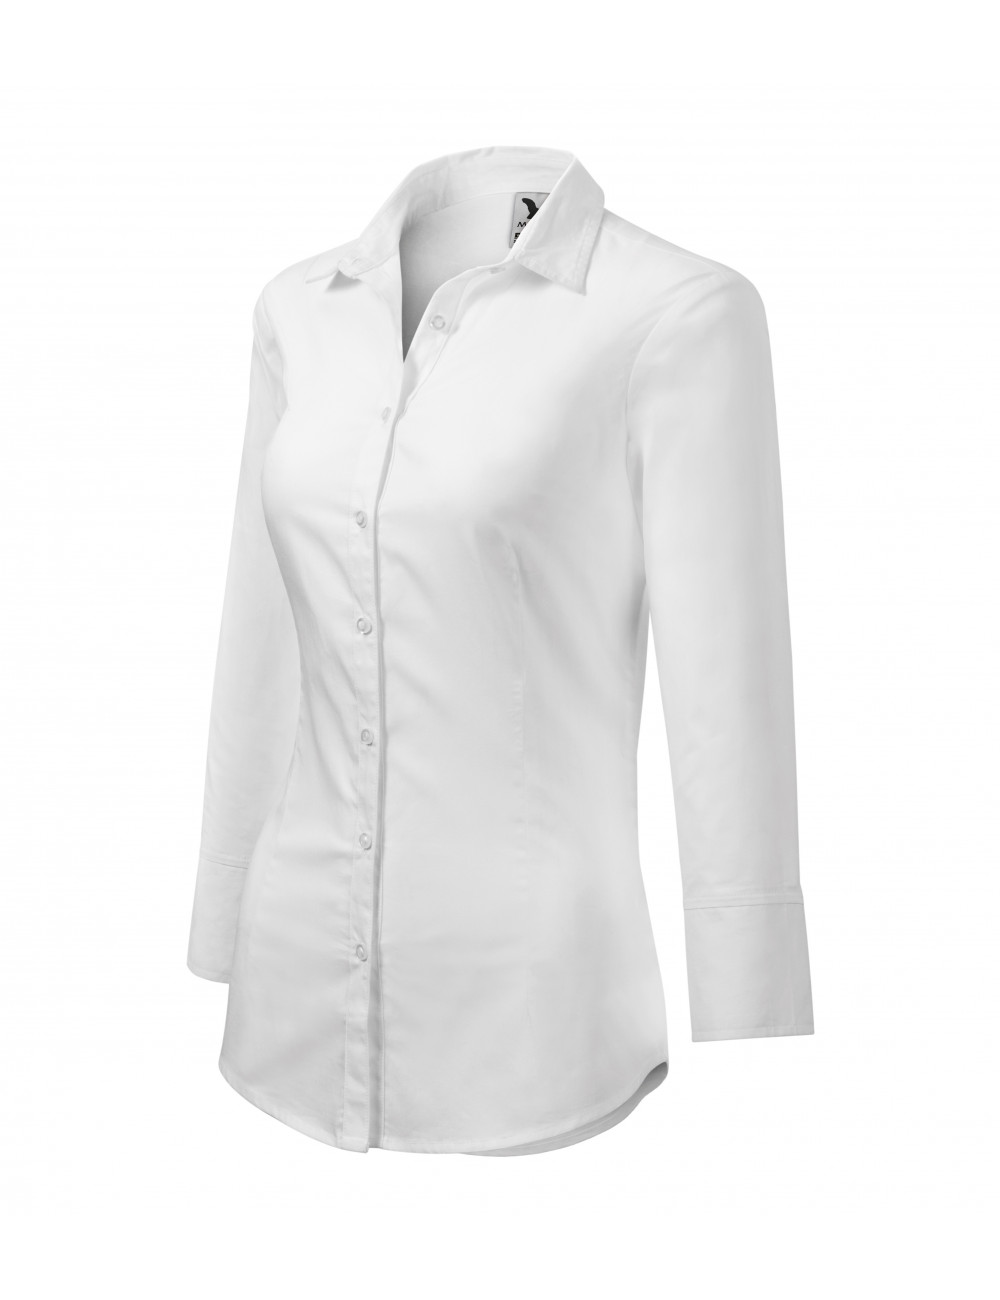 Women`s shirt style 218 white Adler Malfini